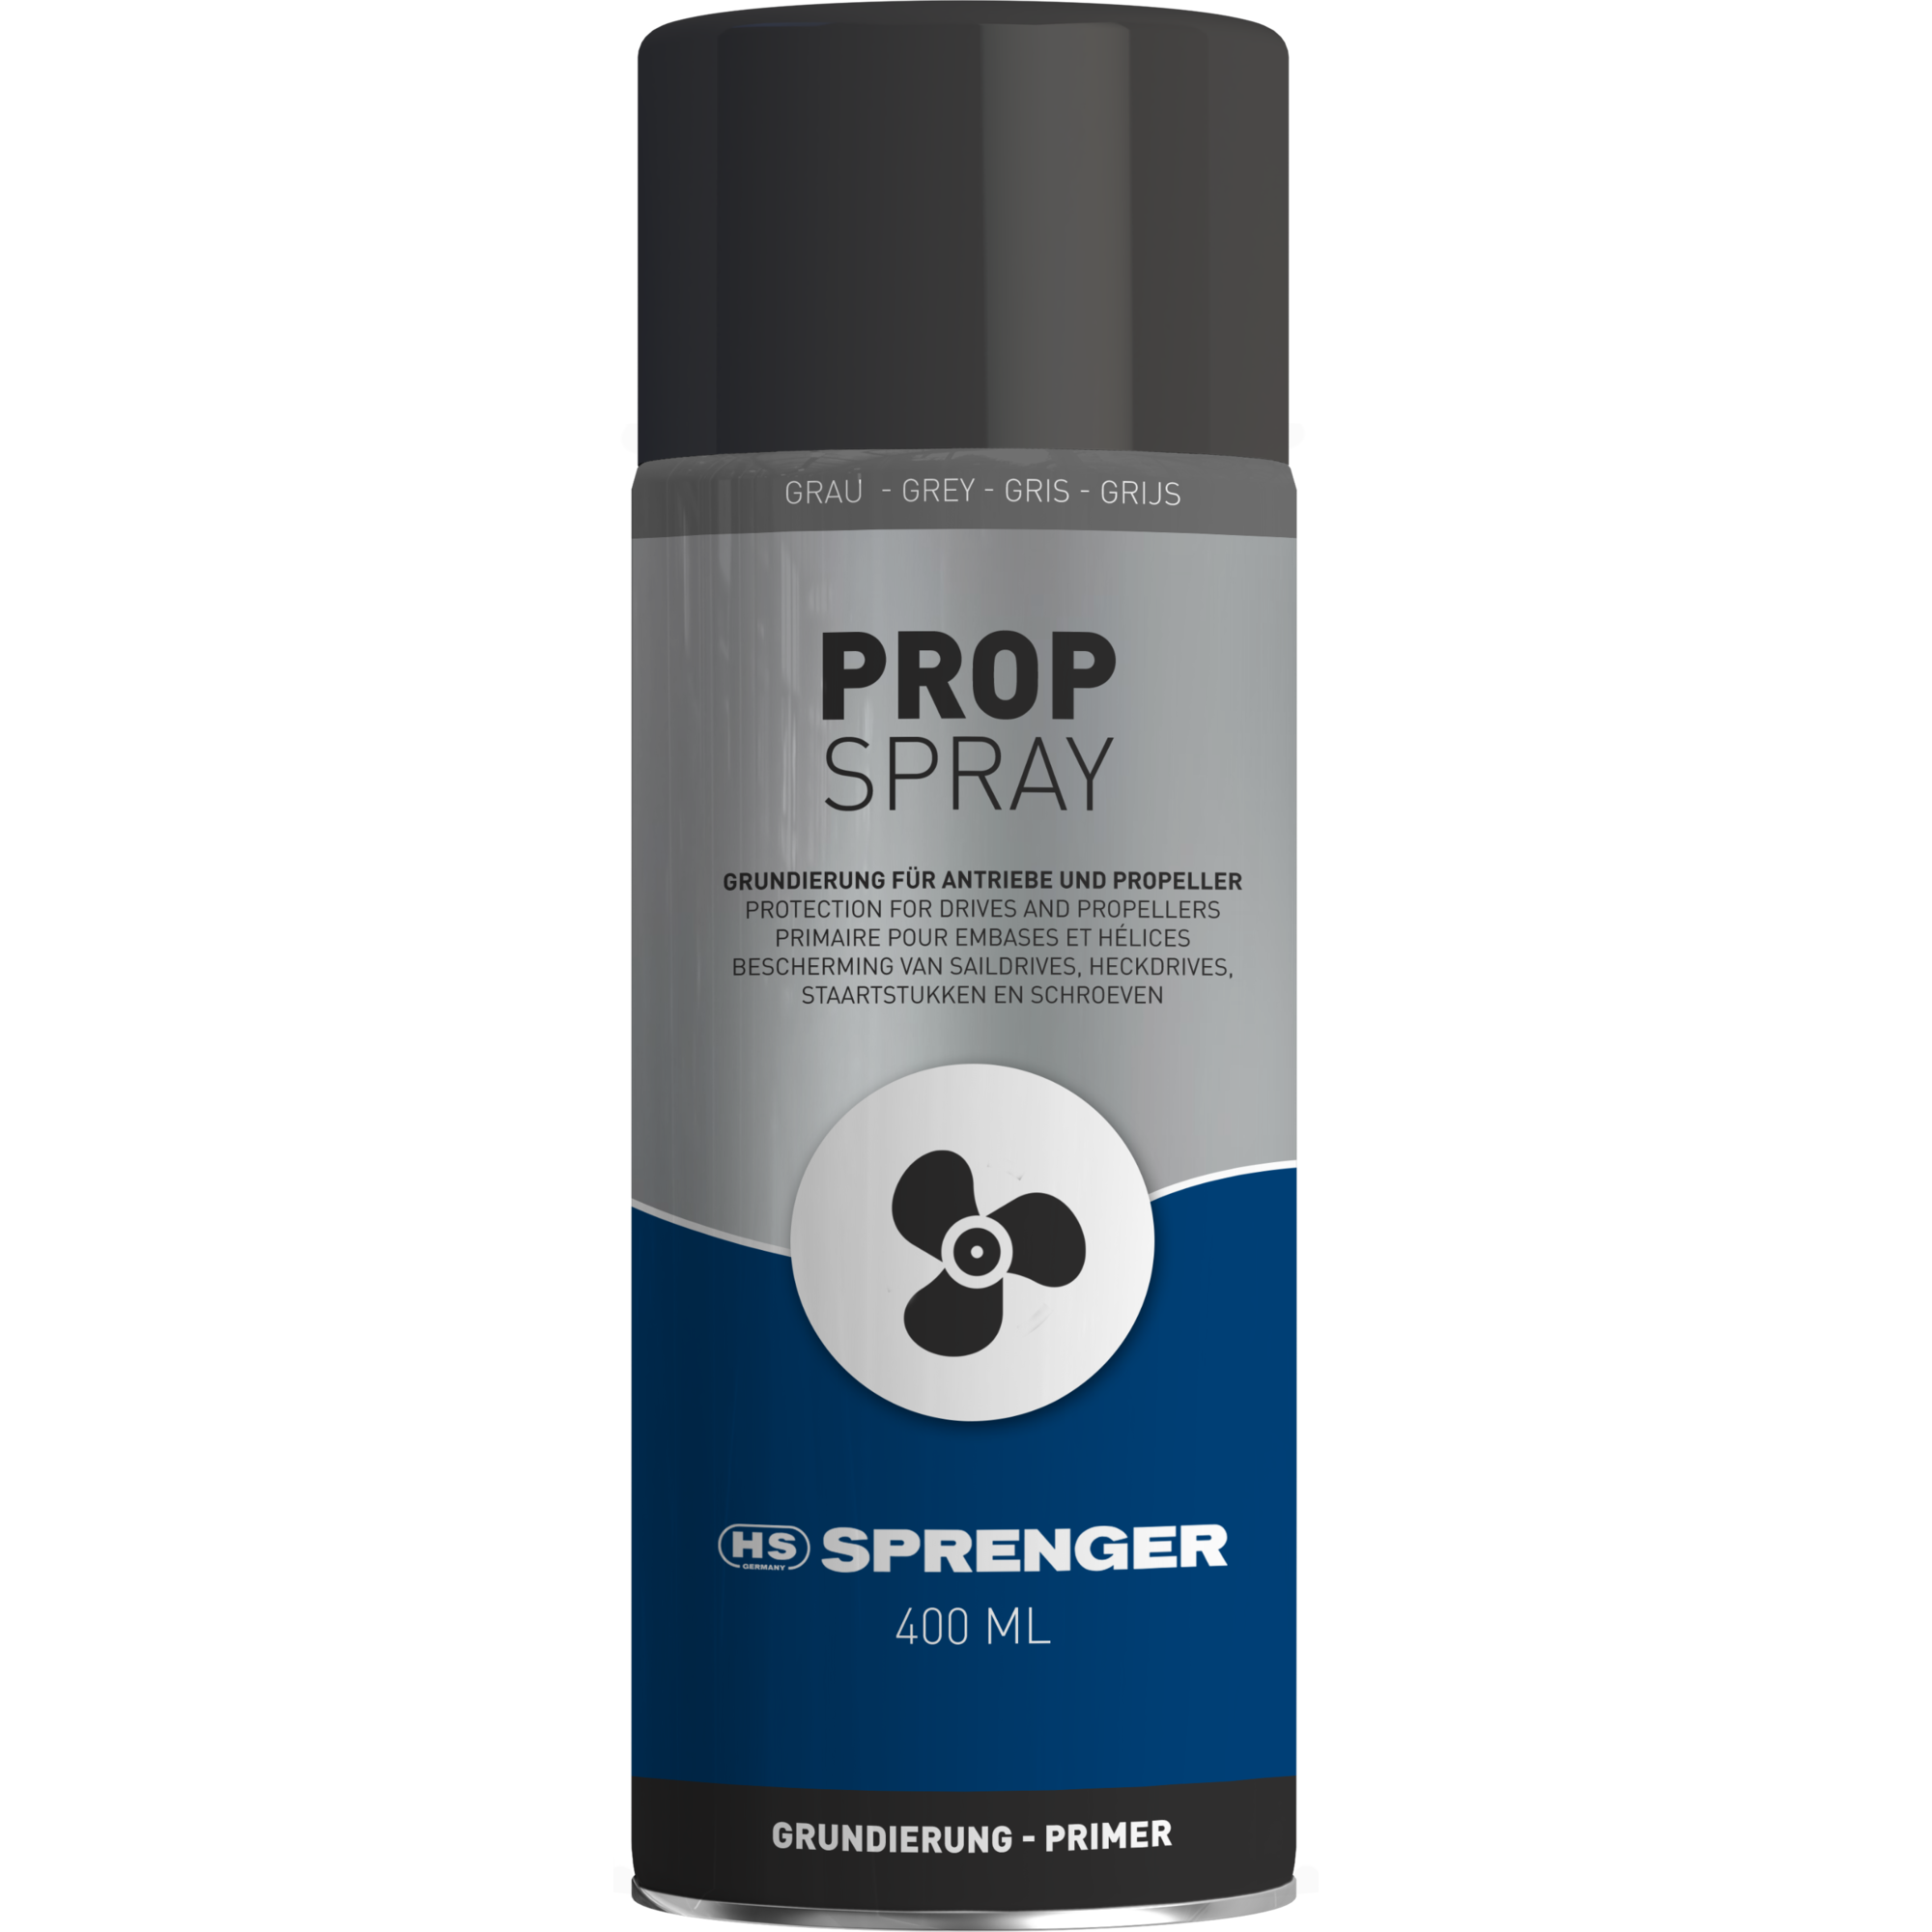 SPRENGER Prop Spray - Grundierung - grau, 400 ml | 0890704000.png | 1700897683